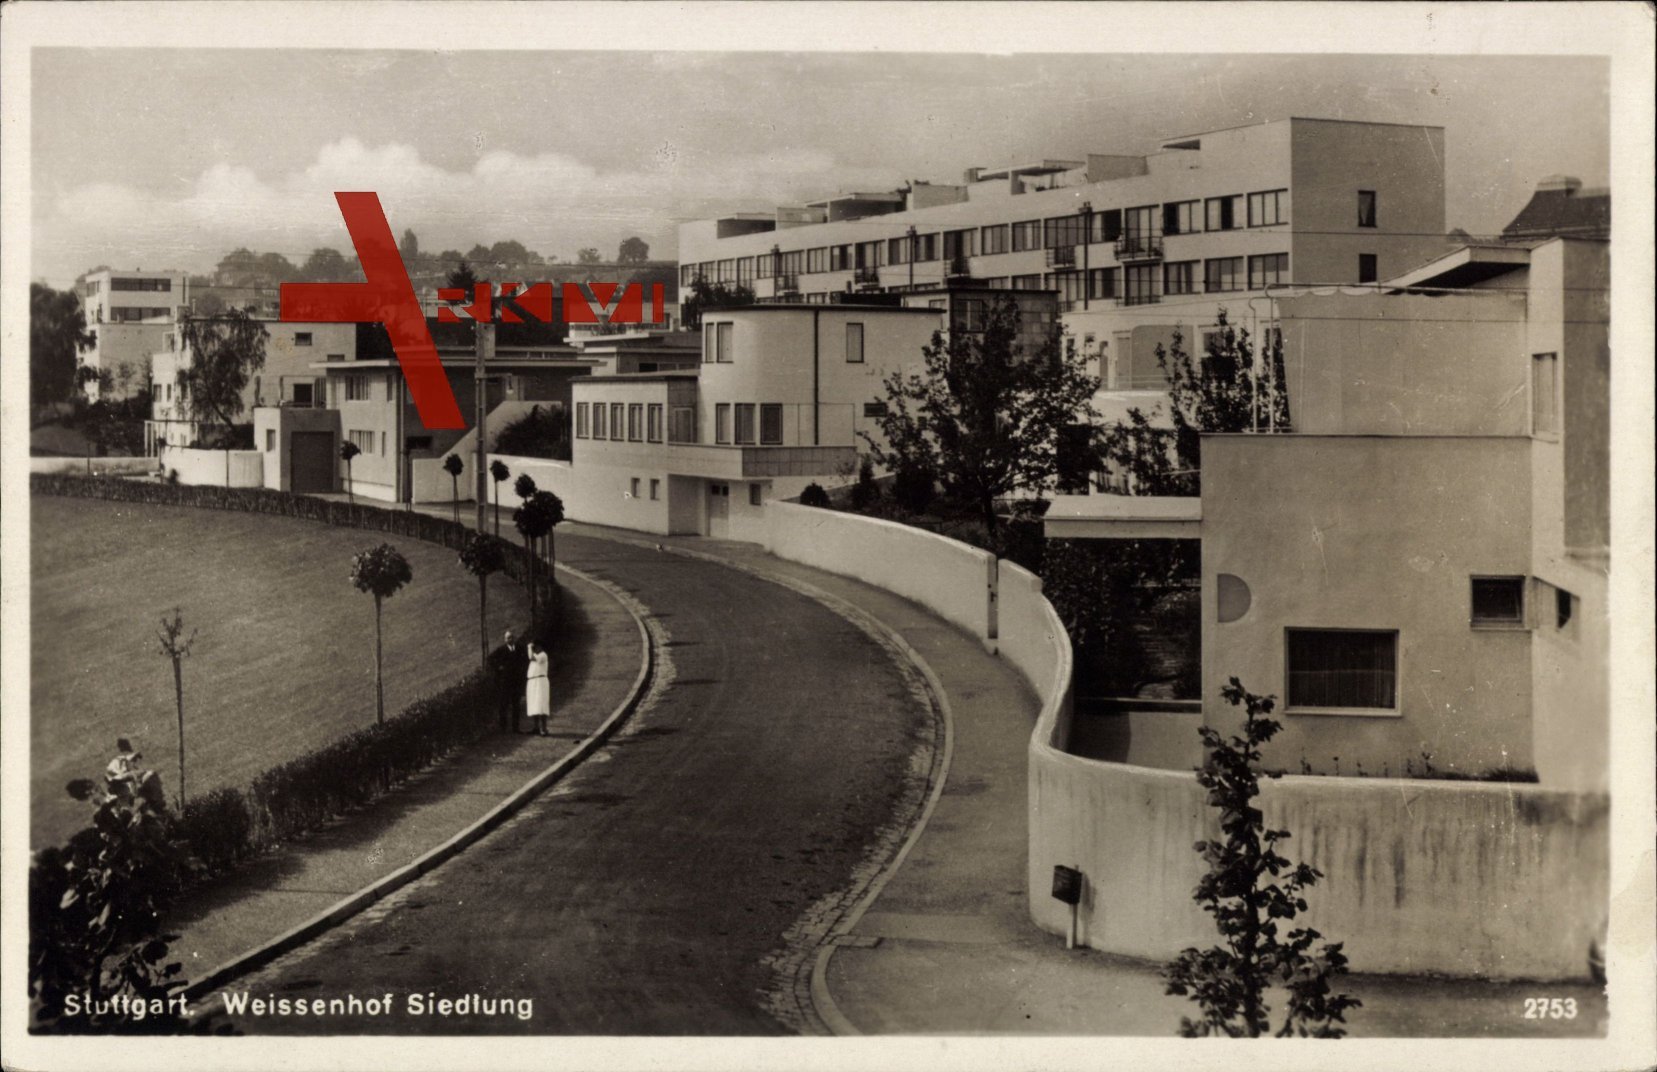 Stuttgart, Weißenhof Siedlung, Bauhaus, Straßenpartie